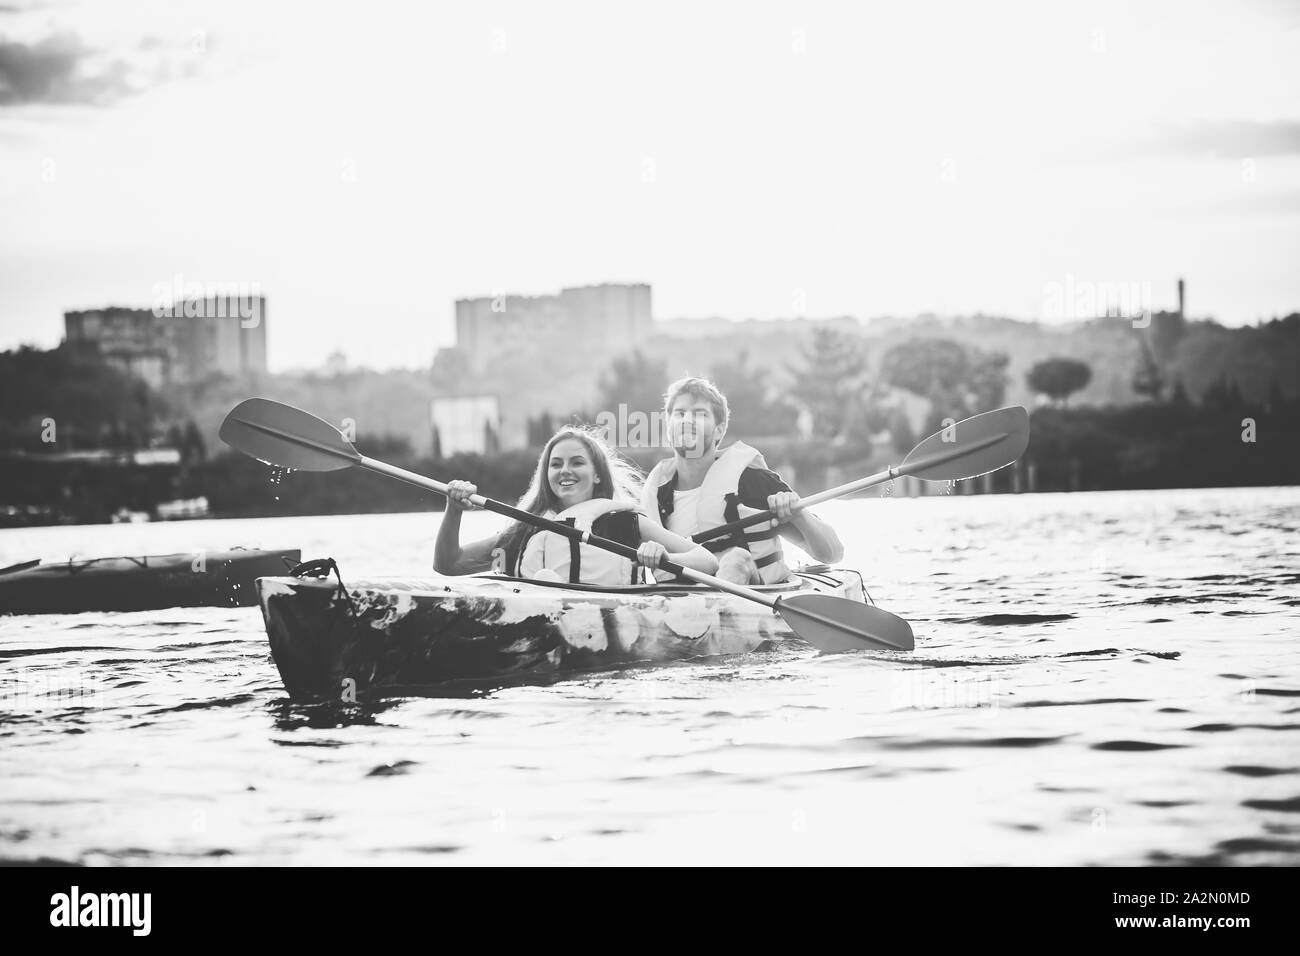 Happy young caucasian couple du kayak sur la rivière au coucher du soleil dans l'arrière-plan. Avoir du plaisir dans l'activité de loisirs. Heureux les hommes et les femmes sur le modèle laughting kayak. Le sport, les relations concept. Incolore. Banque D'Images